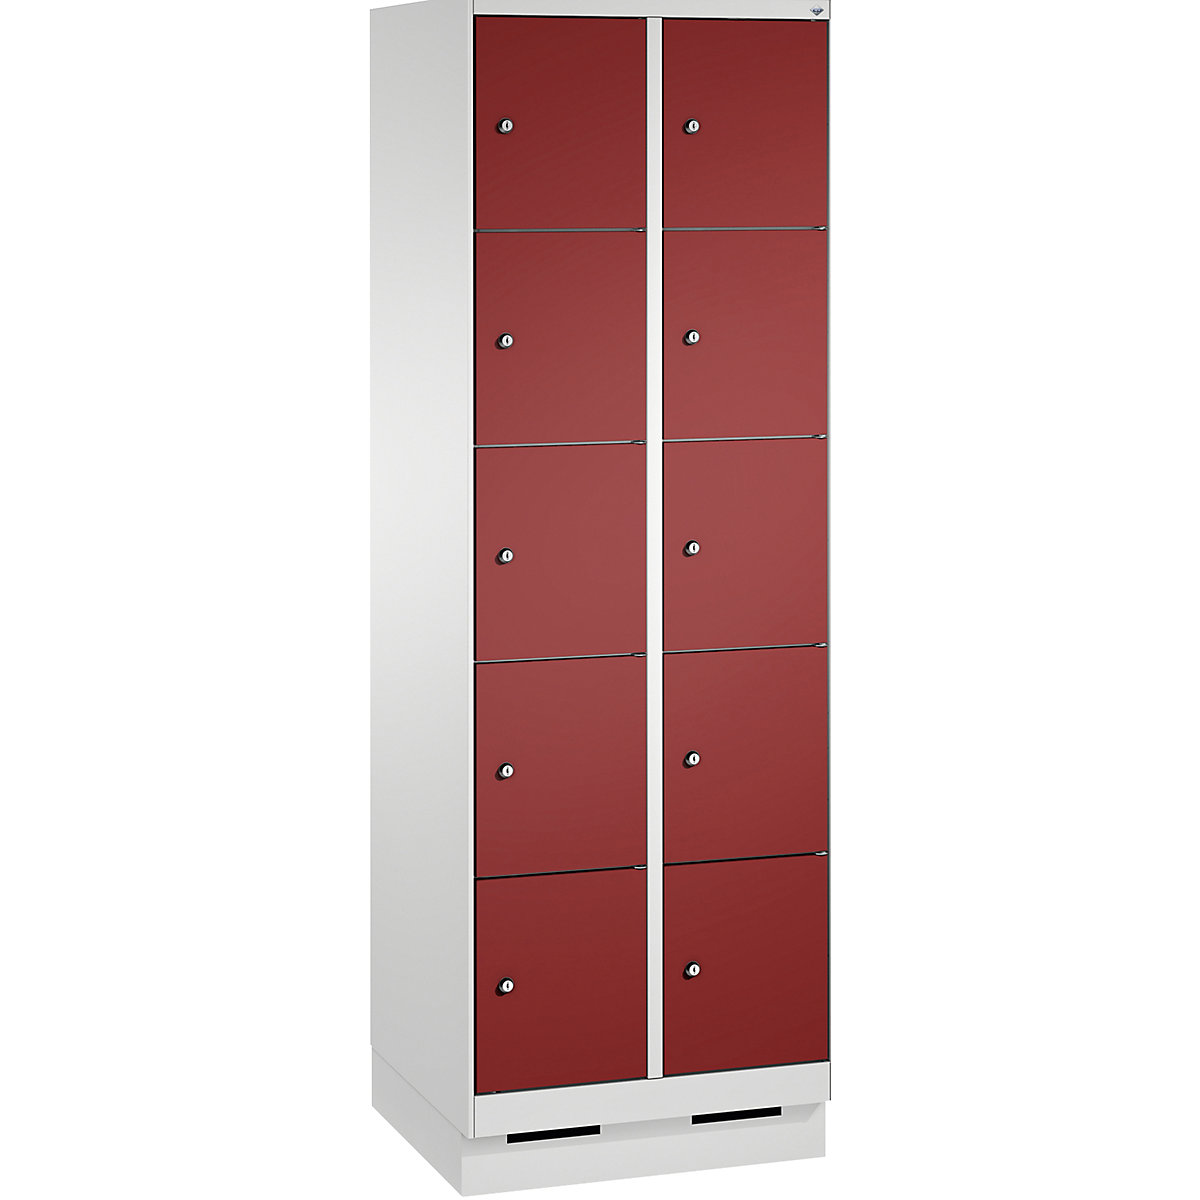 Armoire à casiers sur socle EVOLO – C+P, 2 compartiments, 5 casiers chacun, largeur compartiments 300 mm, gris clair / rouge rubis-4